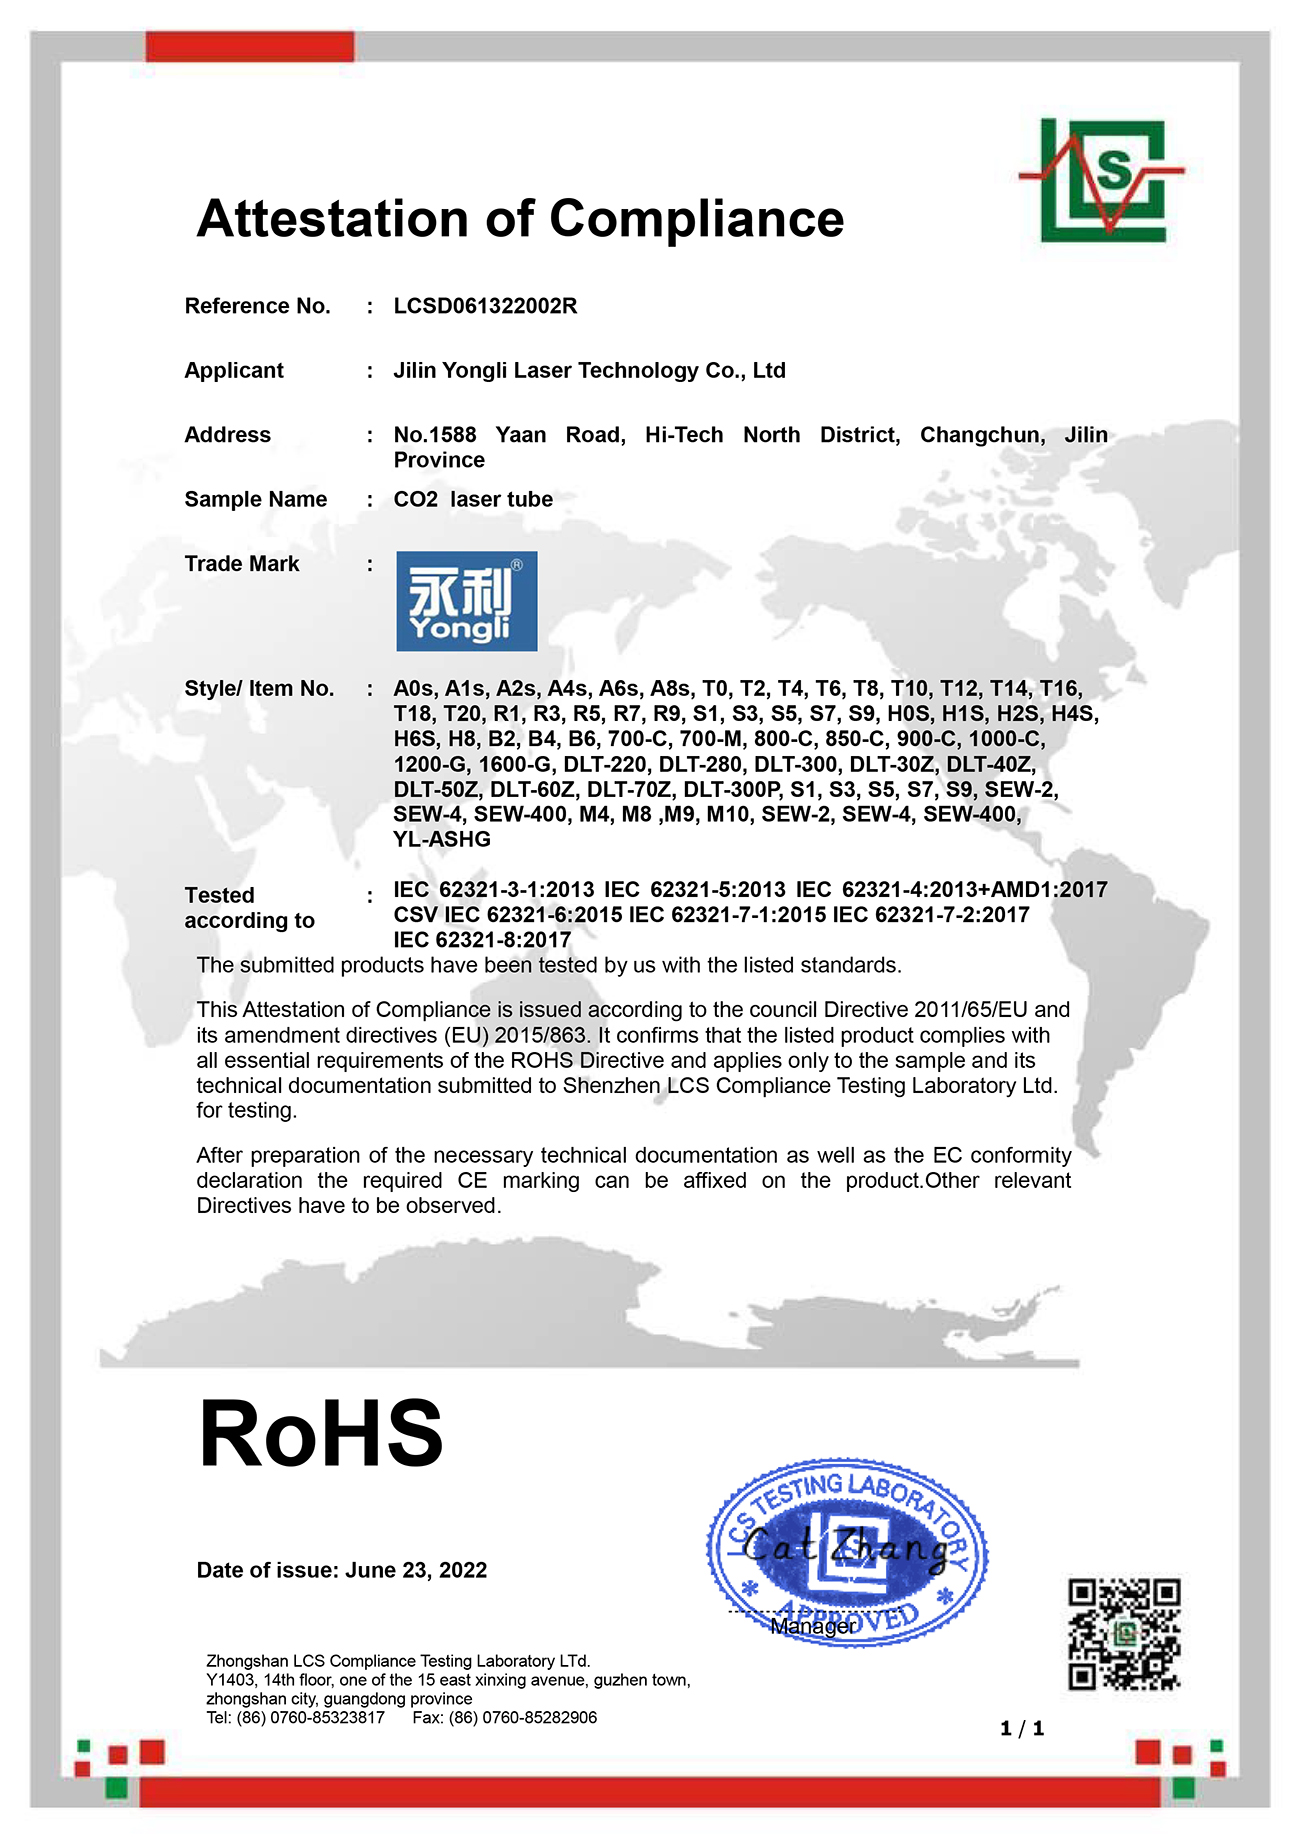 二氧化碳激光器 红光指示 ROHS-证书